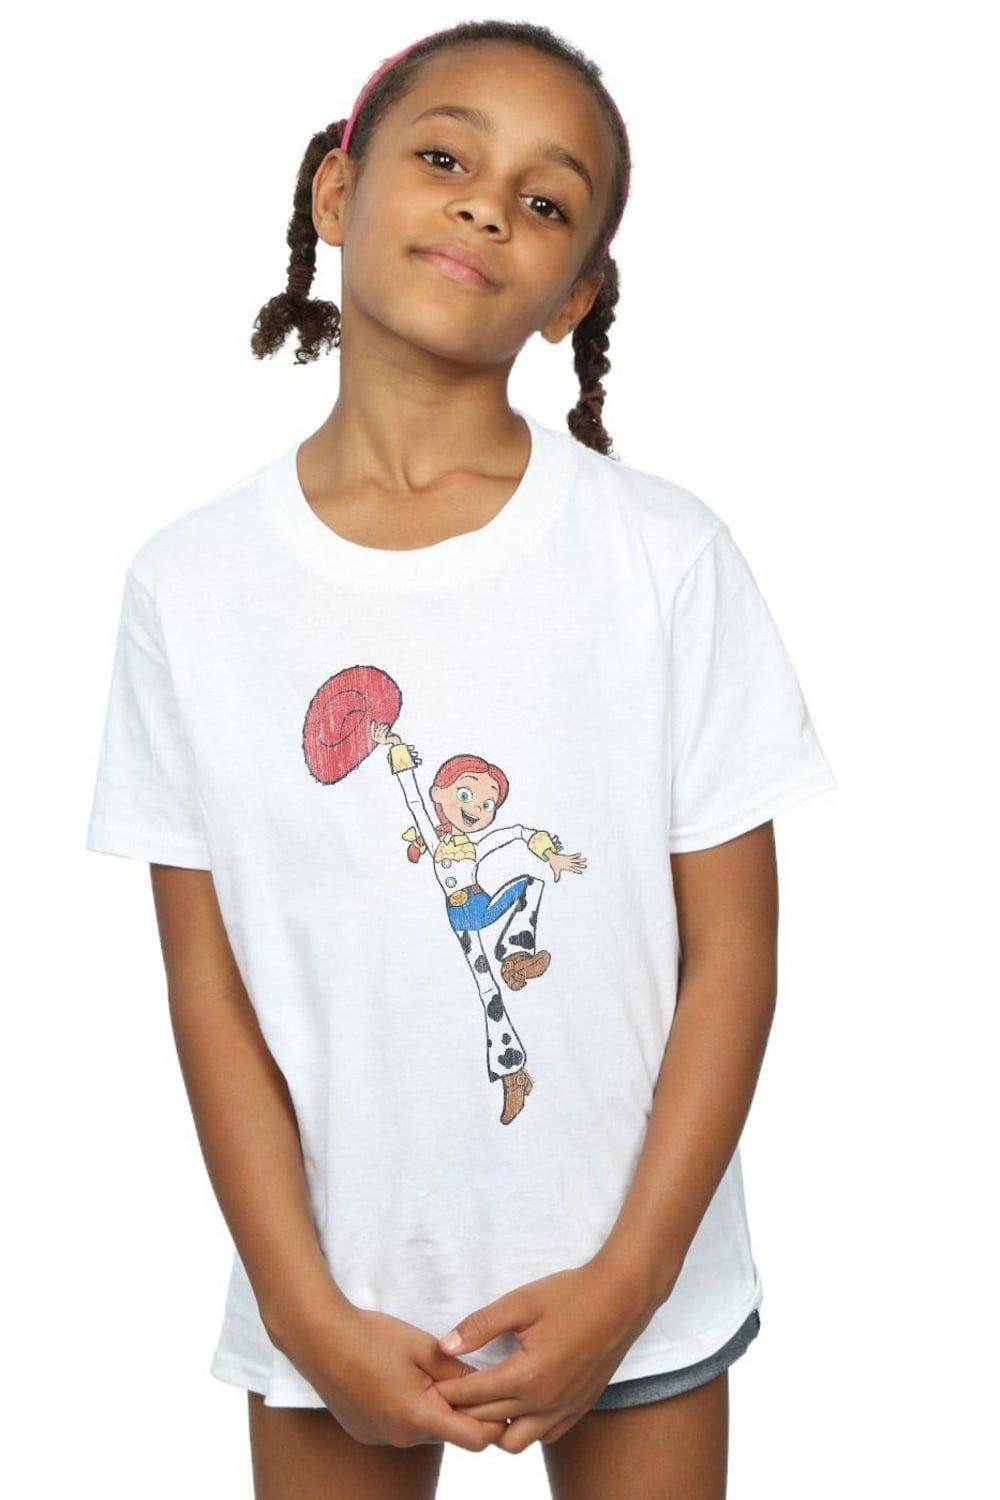 Хлопковая футболка «История игрушек 4: Джесси в прыжке» Disney, белый